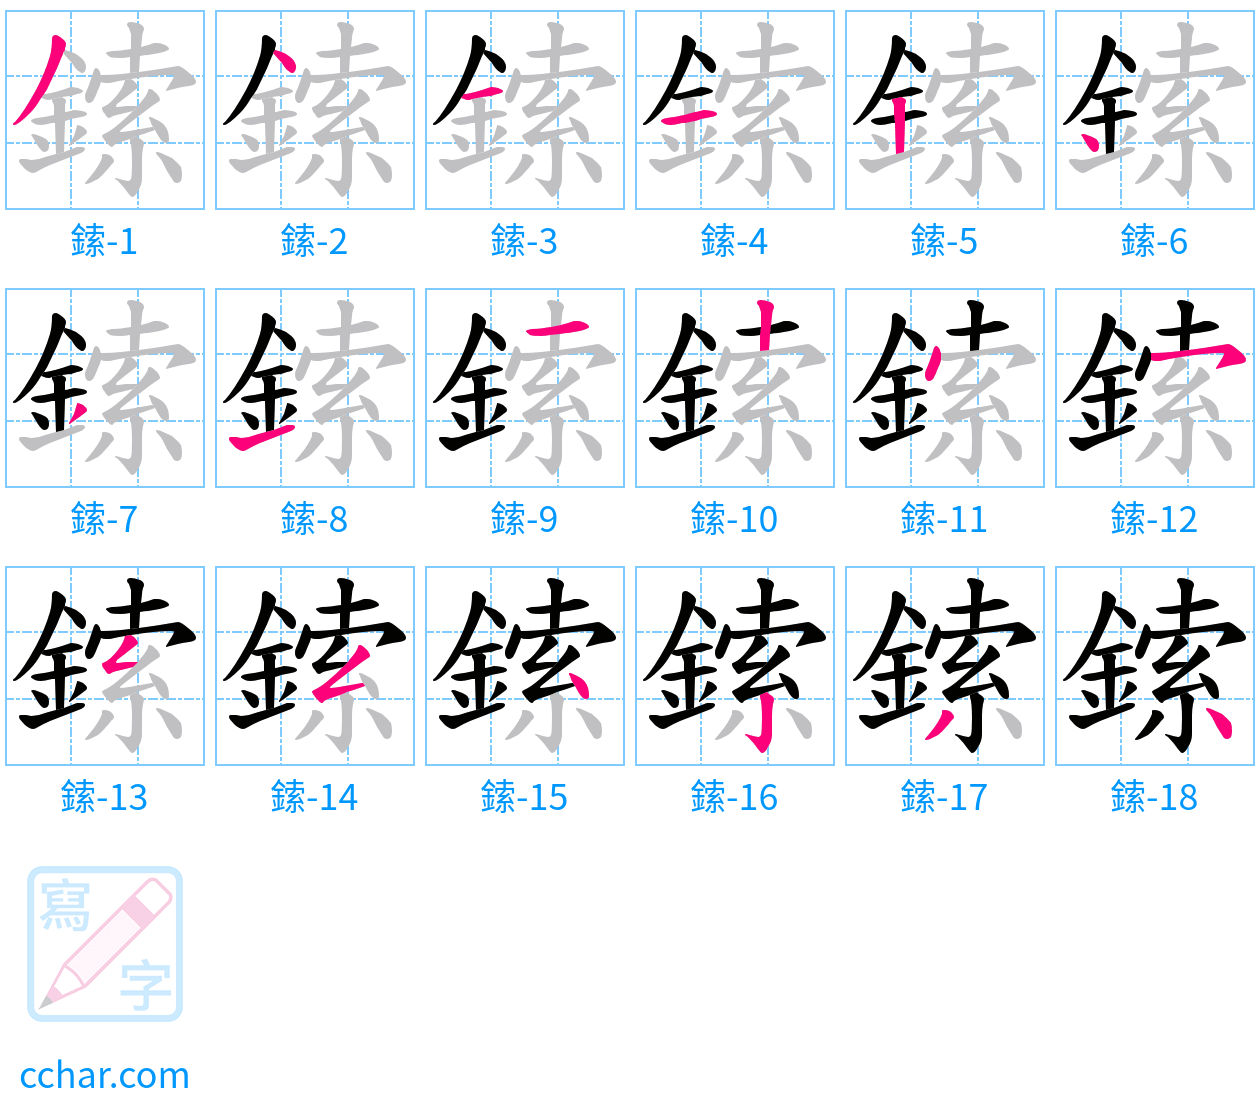 鎍 stroke order step-by-step diagram